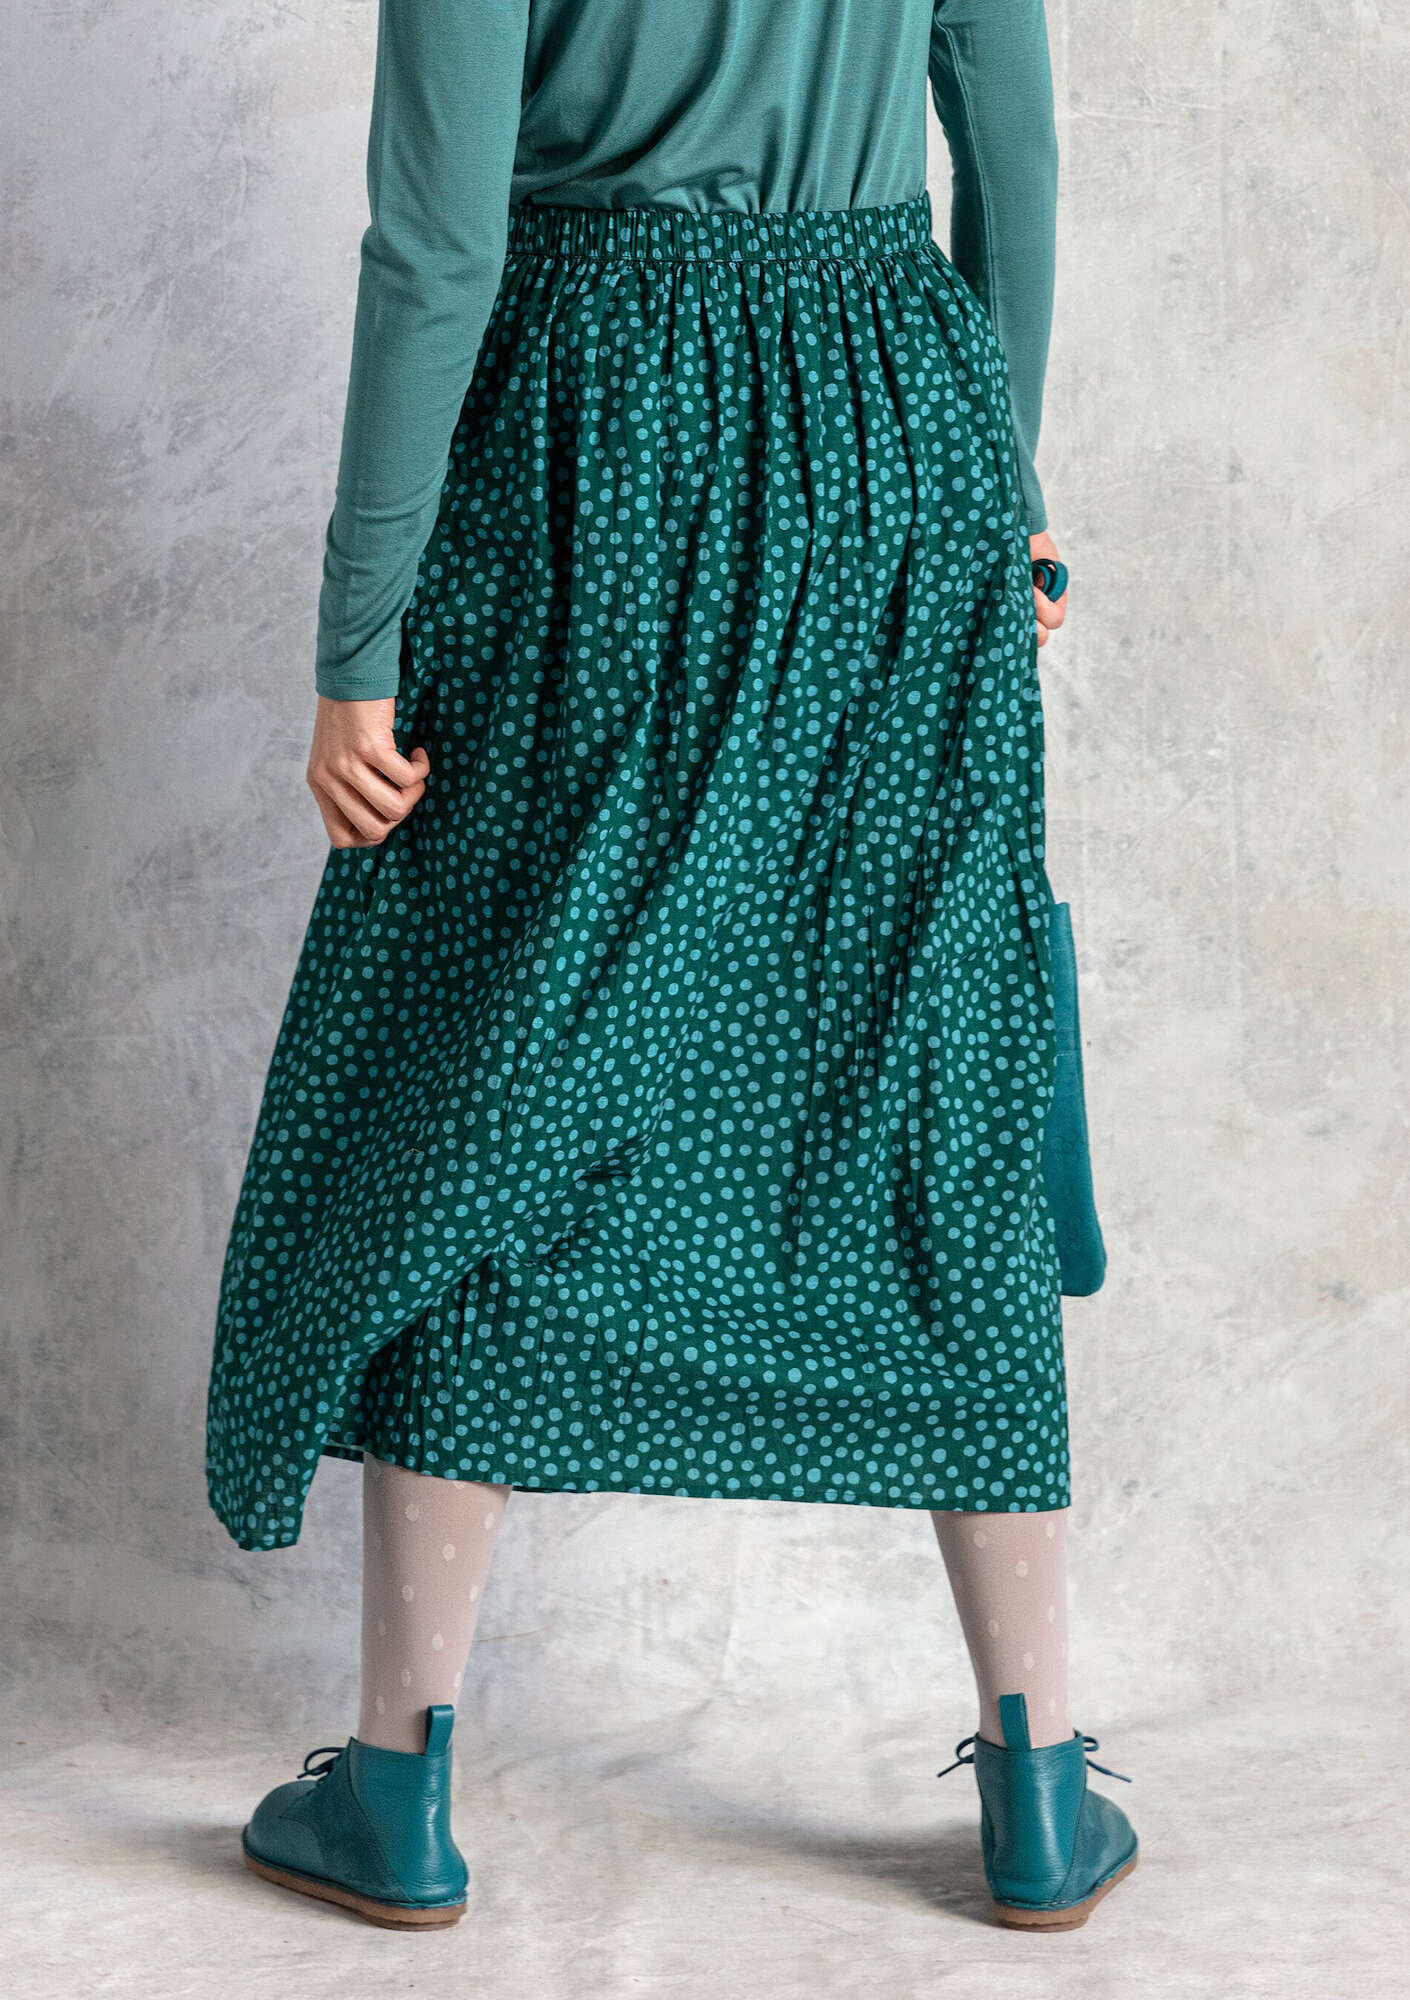 Vävd kjol  Alice  i ekologisk bomull mörkgrön/mönstrad